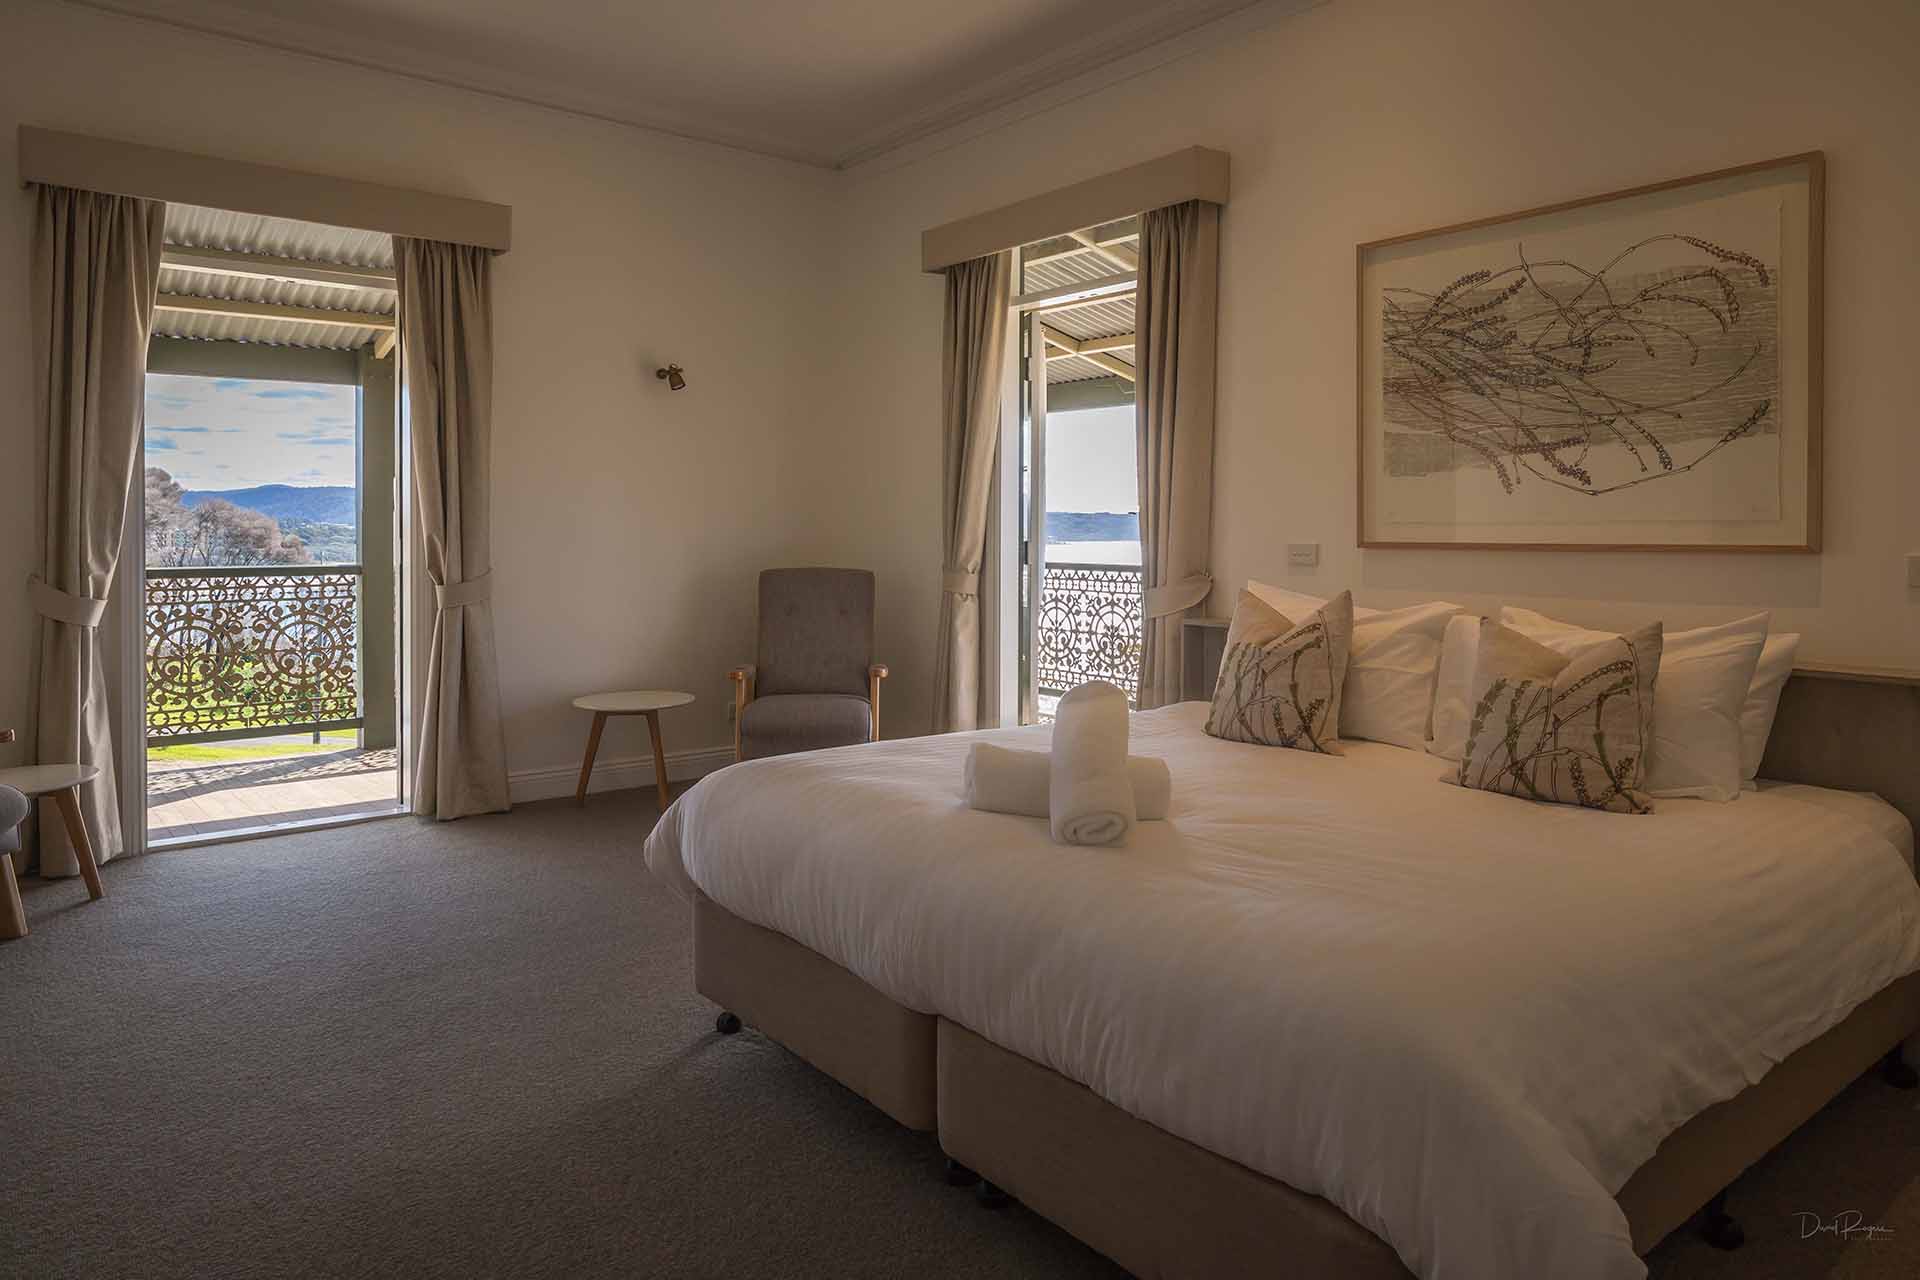 Tathra Hotel, Accommodation in Tathra, beach holiday NSW South Coast, Sapphire Coast